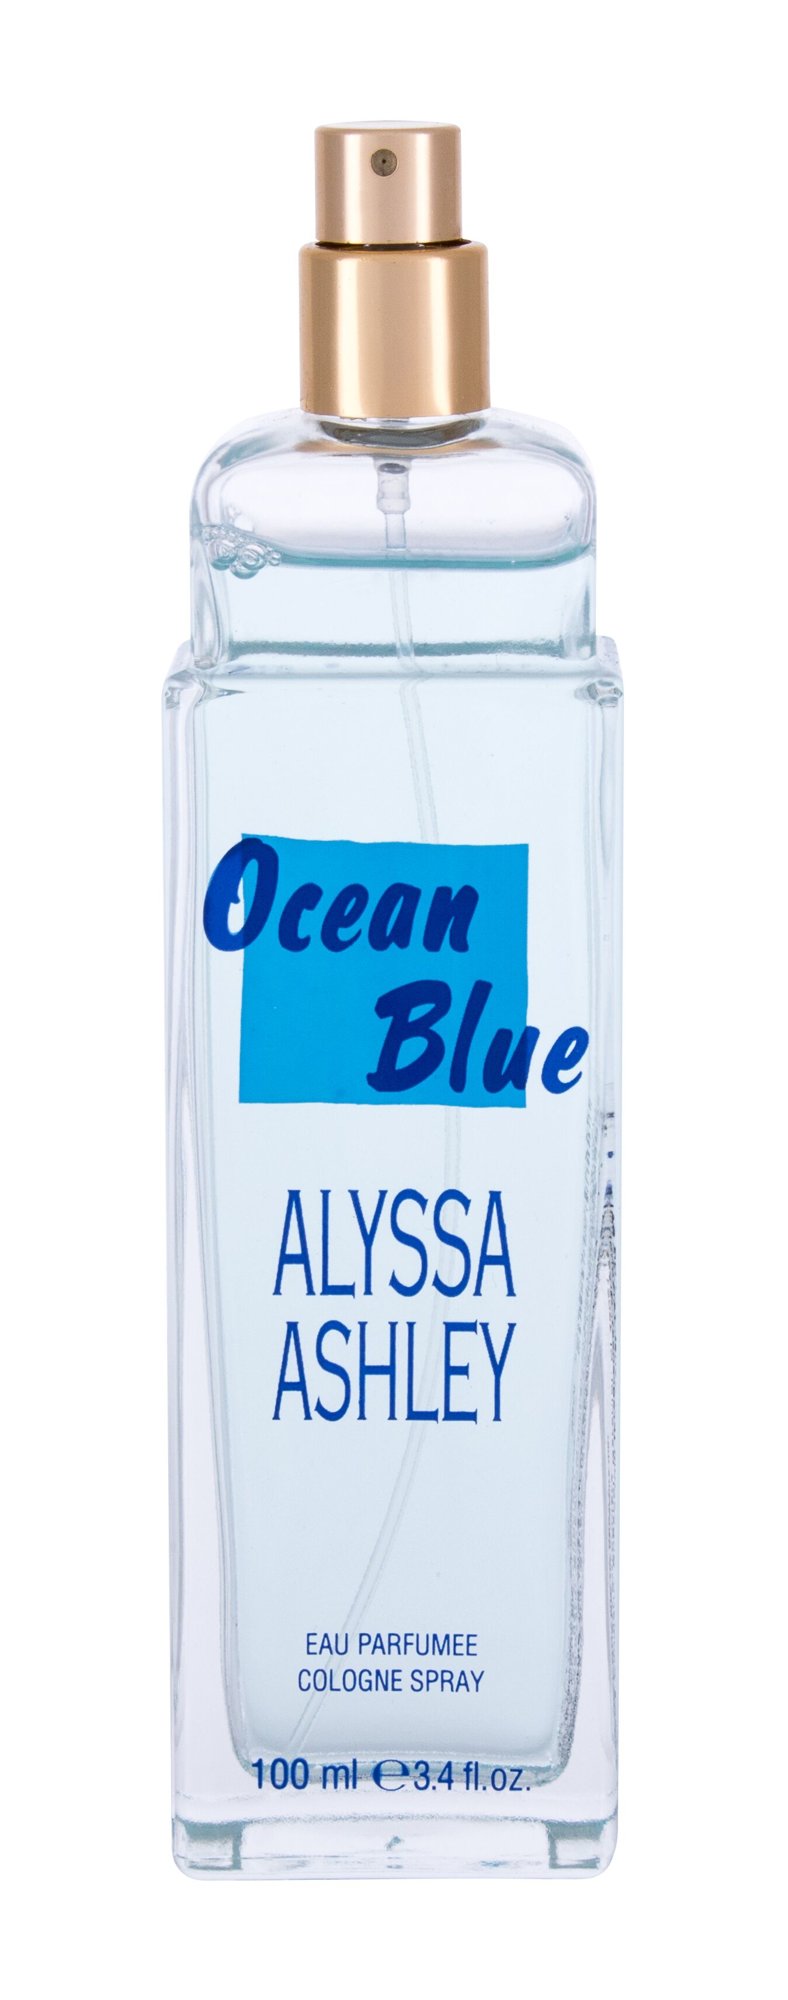 Alyssa Ashley Ocean Blue